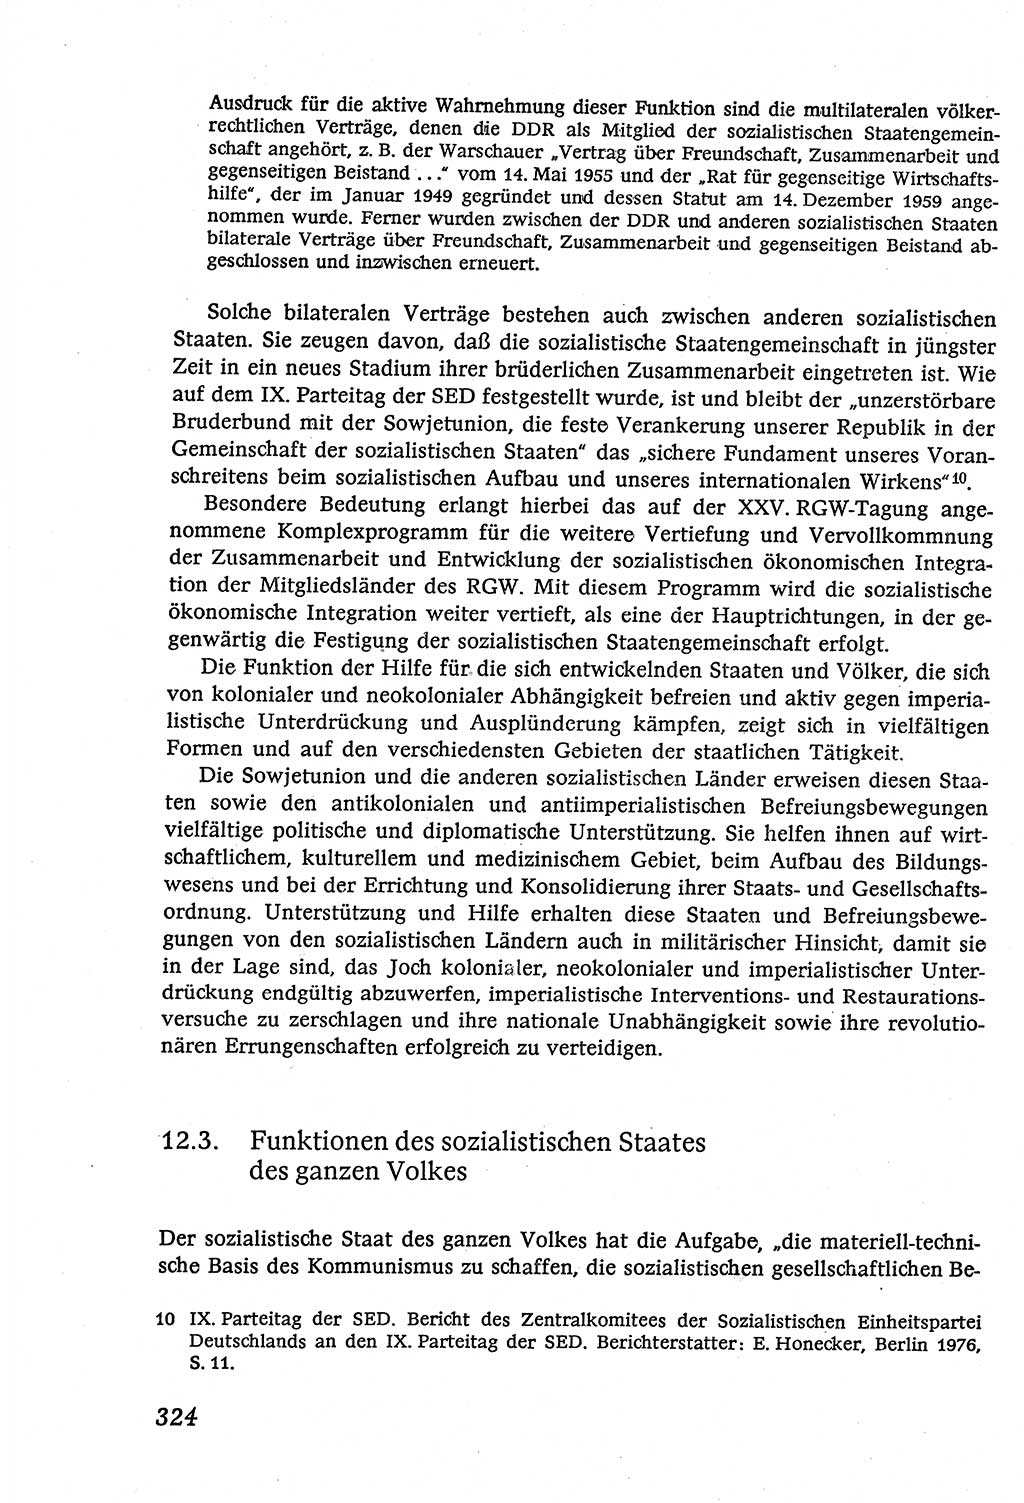 Marxistisch-leninistische (ML) Staats- und Rechtstheorie [Deutsche Demokratische Republik (DDR)], Lehrbuch 1980, Seite 324 (ML St.-R.-Th. DDR Lb. 1980, S. 324)